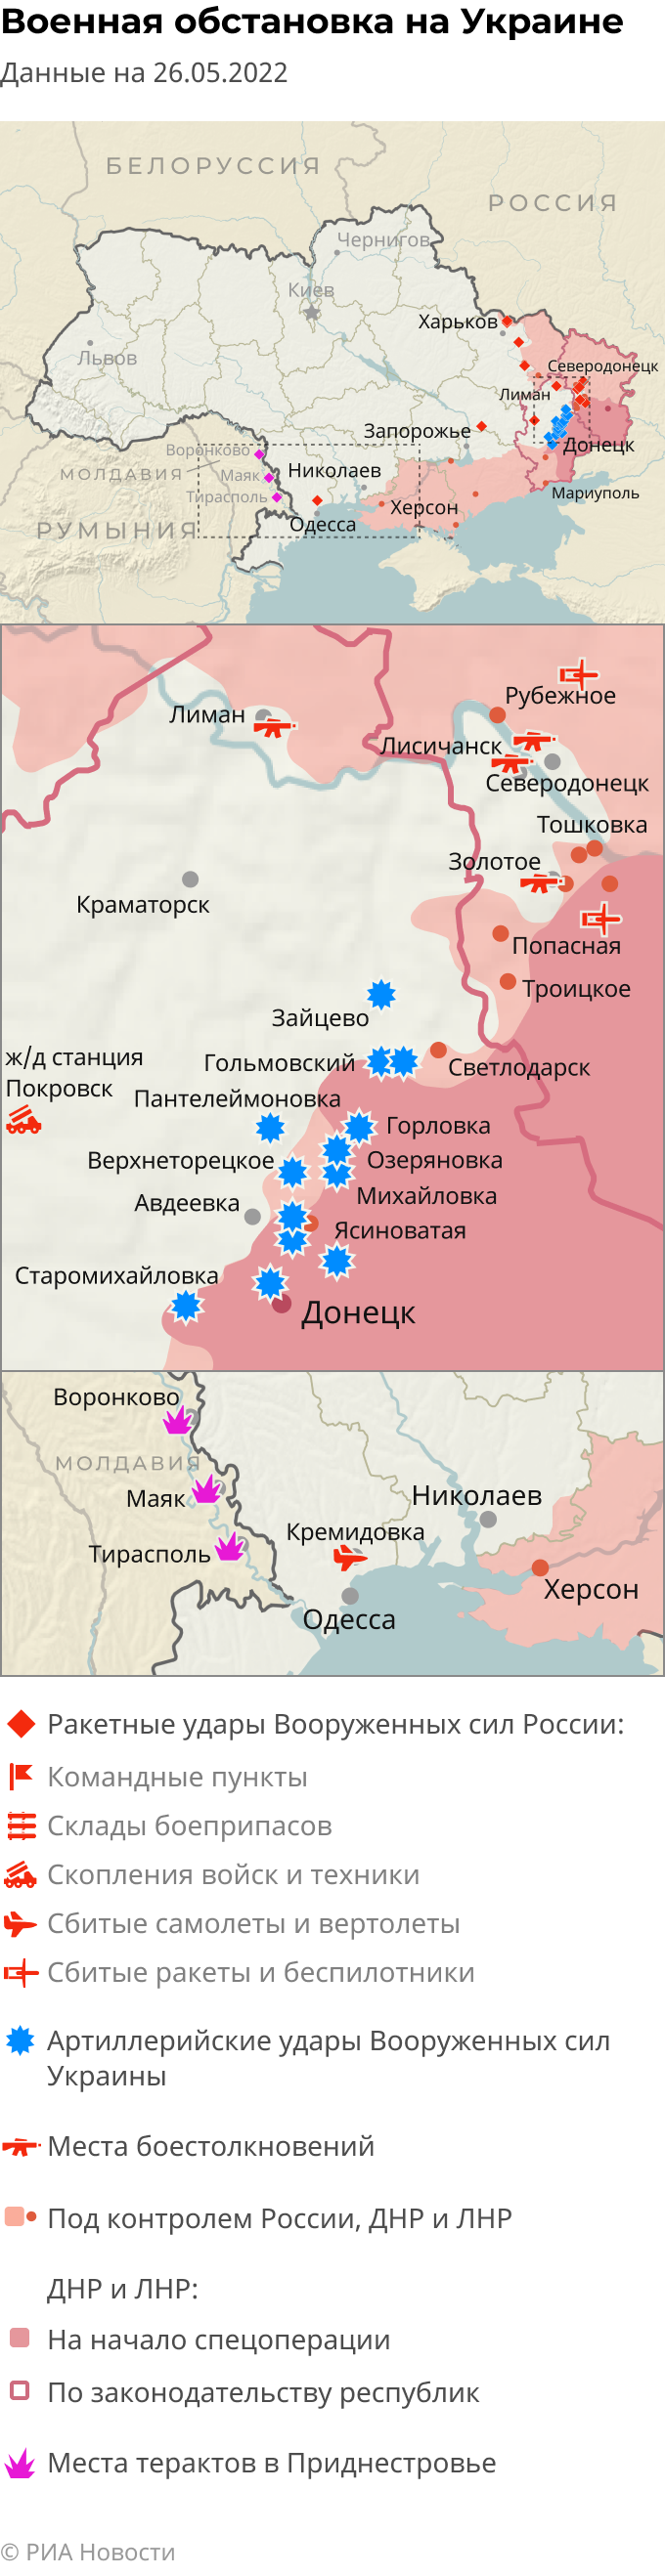 Фронтовая карта украины на сегодня